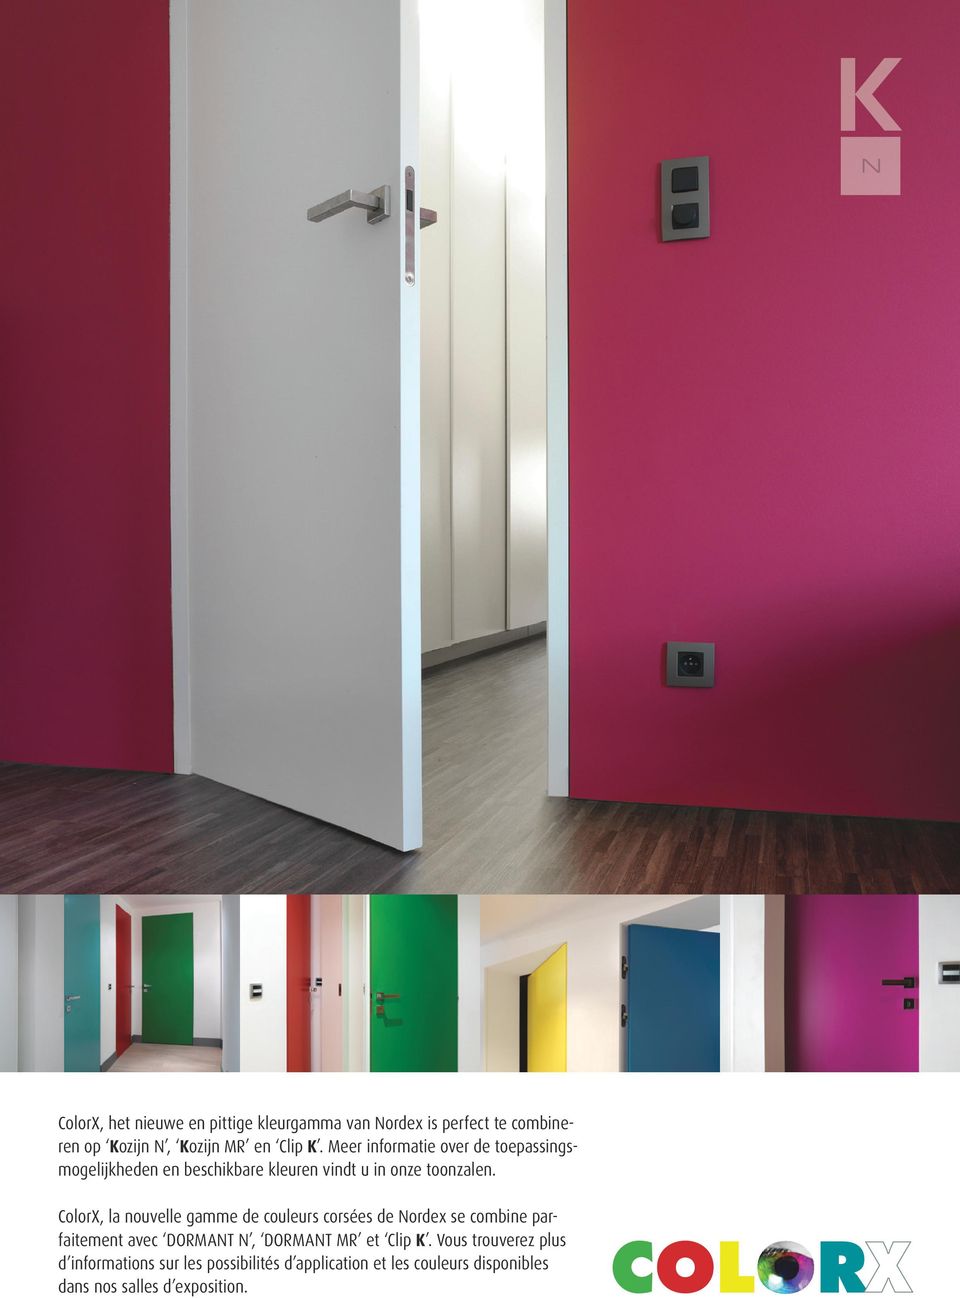 ColorX, la nouvelle gamme de couleurs corsées de Nordex se combine parfaitement avec DORMANT N, DORMANT MR et Clip